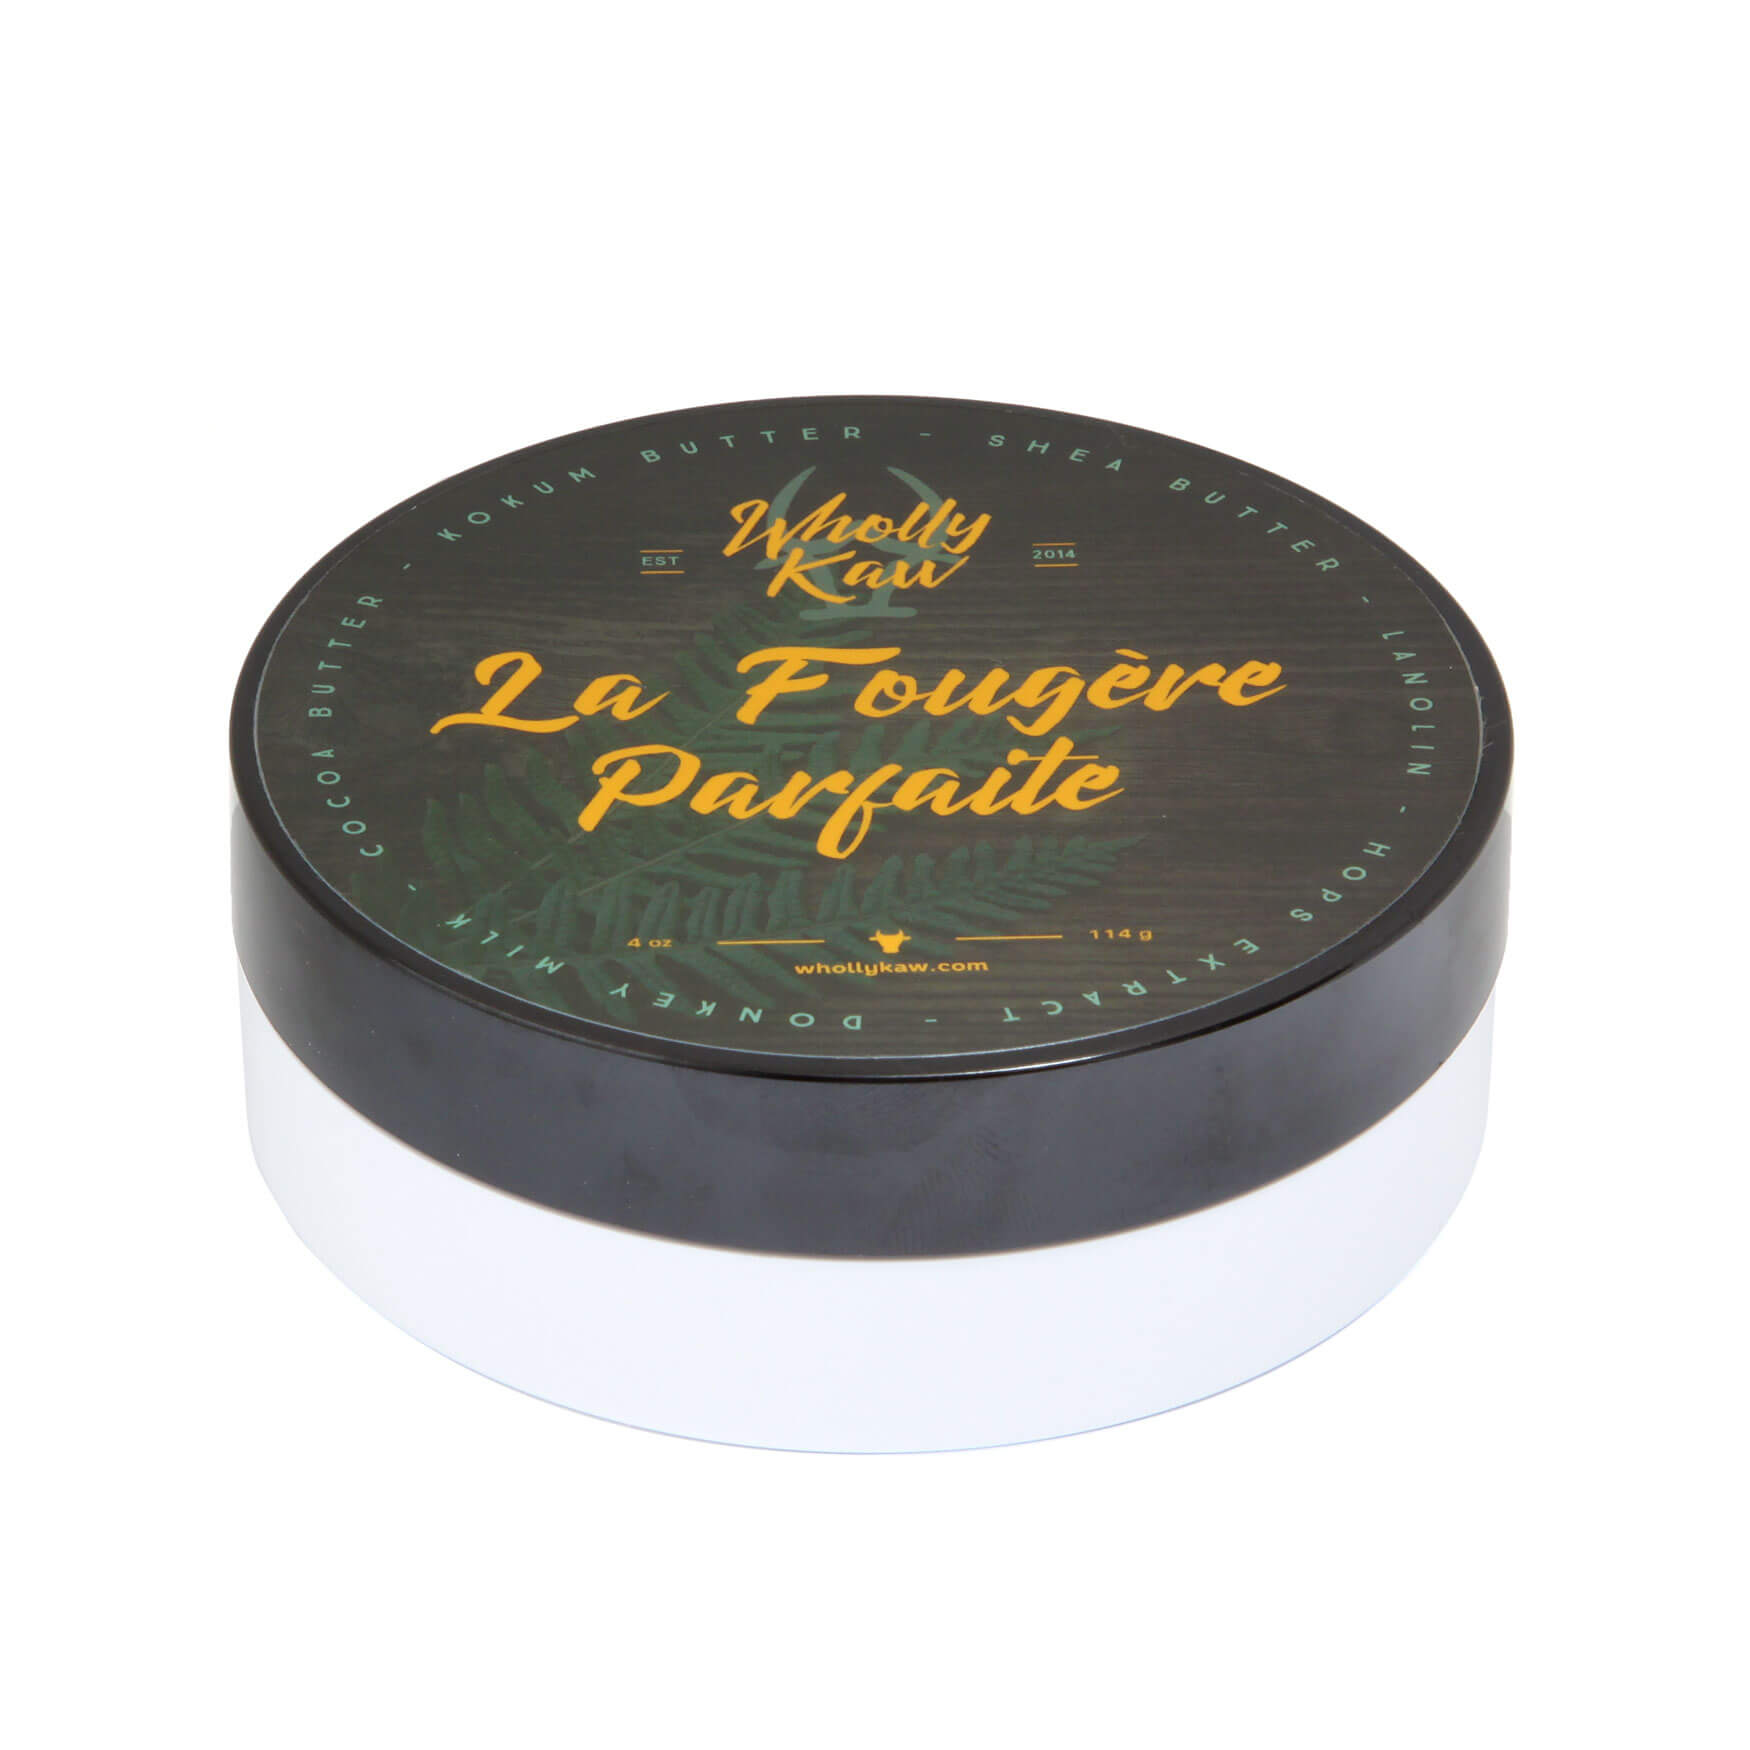 Wholly Kaw La Fougere Parfaite Shaving Soap